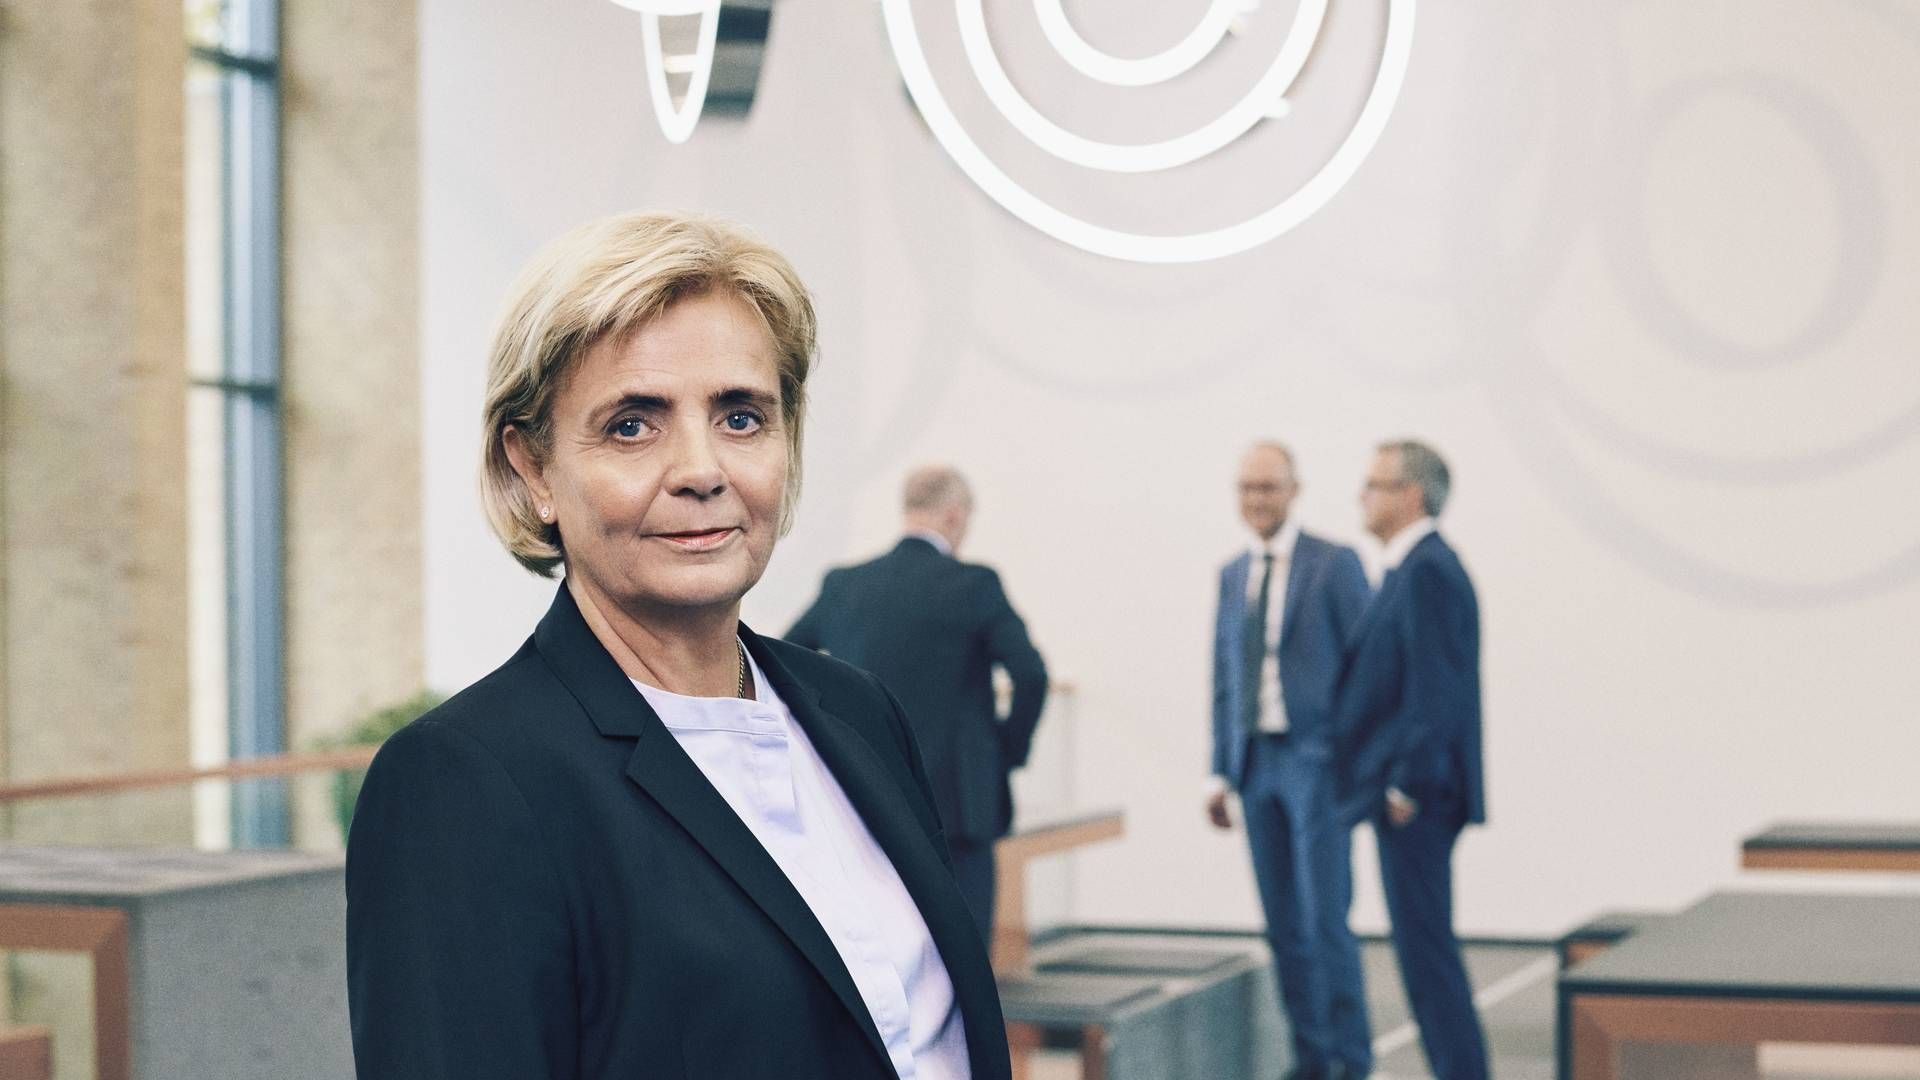 Sydbanks adm. direktør, Karen Frøsig, mener, at der har været for meget silotankegang i de fire områder i banken investering, markets, kapitalforvaltning og Private Banking, som nu skal arbejde tættere sammen. | Foto: PR / Sydbank